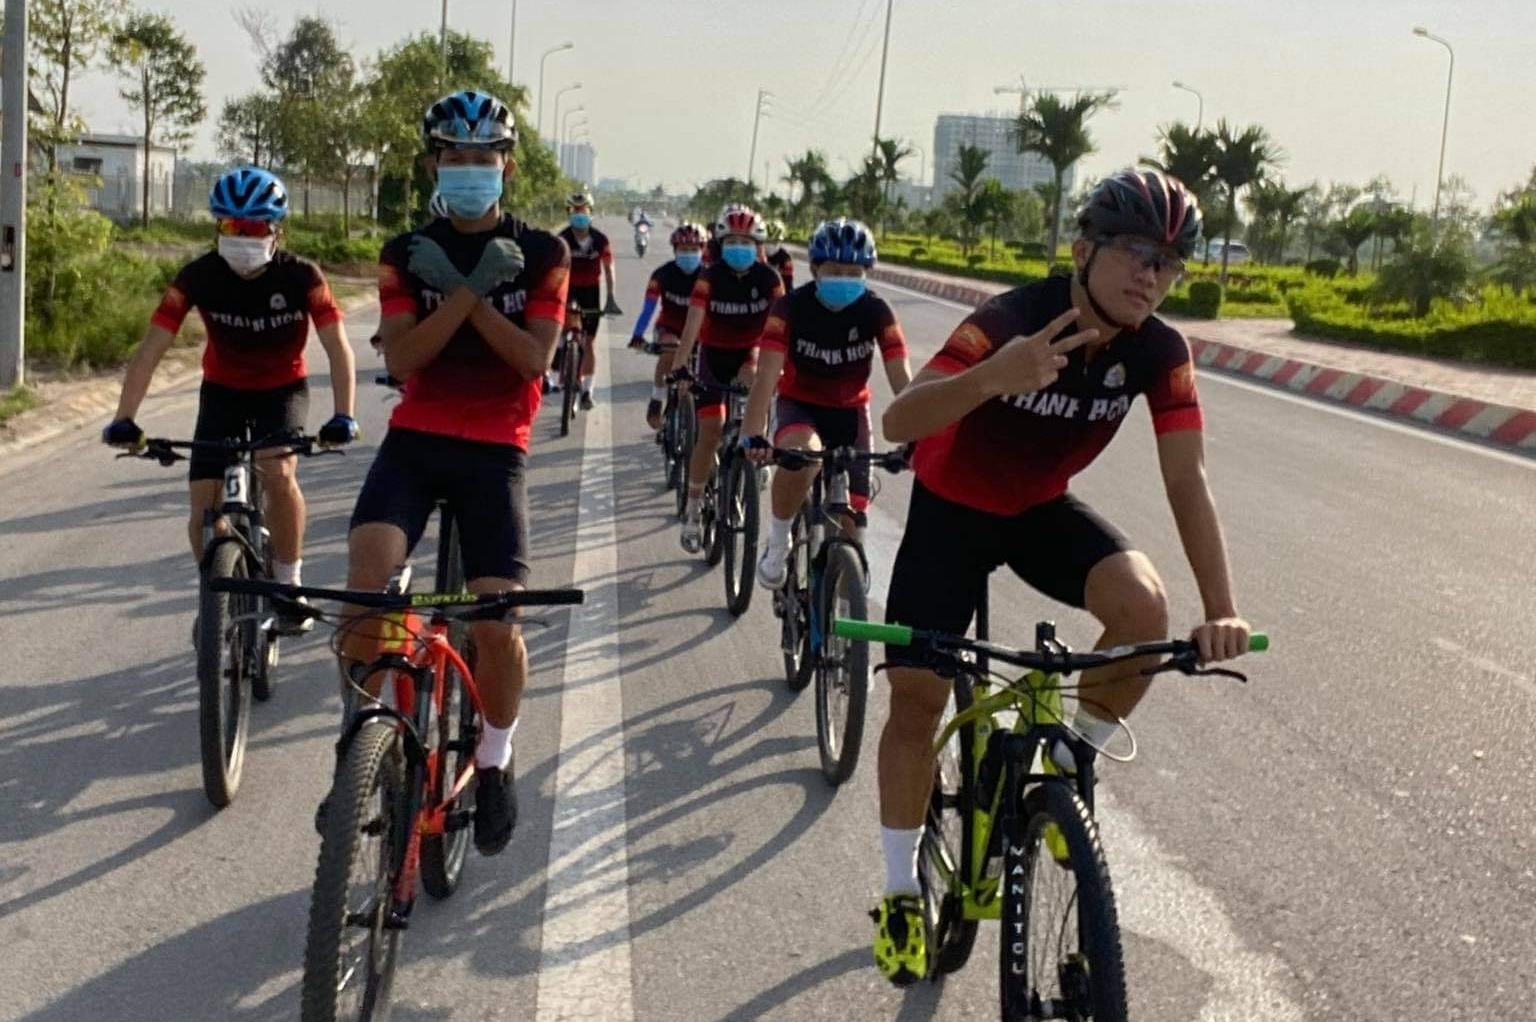 Đội tuyển xe đạp Thanh Hóa chuẩn bị cho Cuộc đua xe đạp toàn quốc tranh Cúp Truyền hình thành phố Hồ Chí Minh